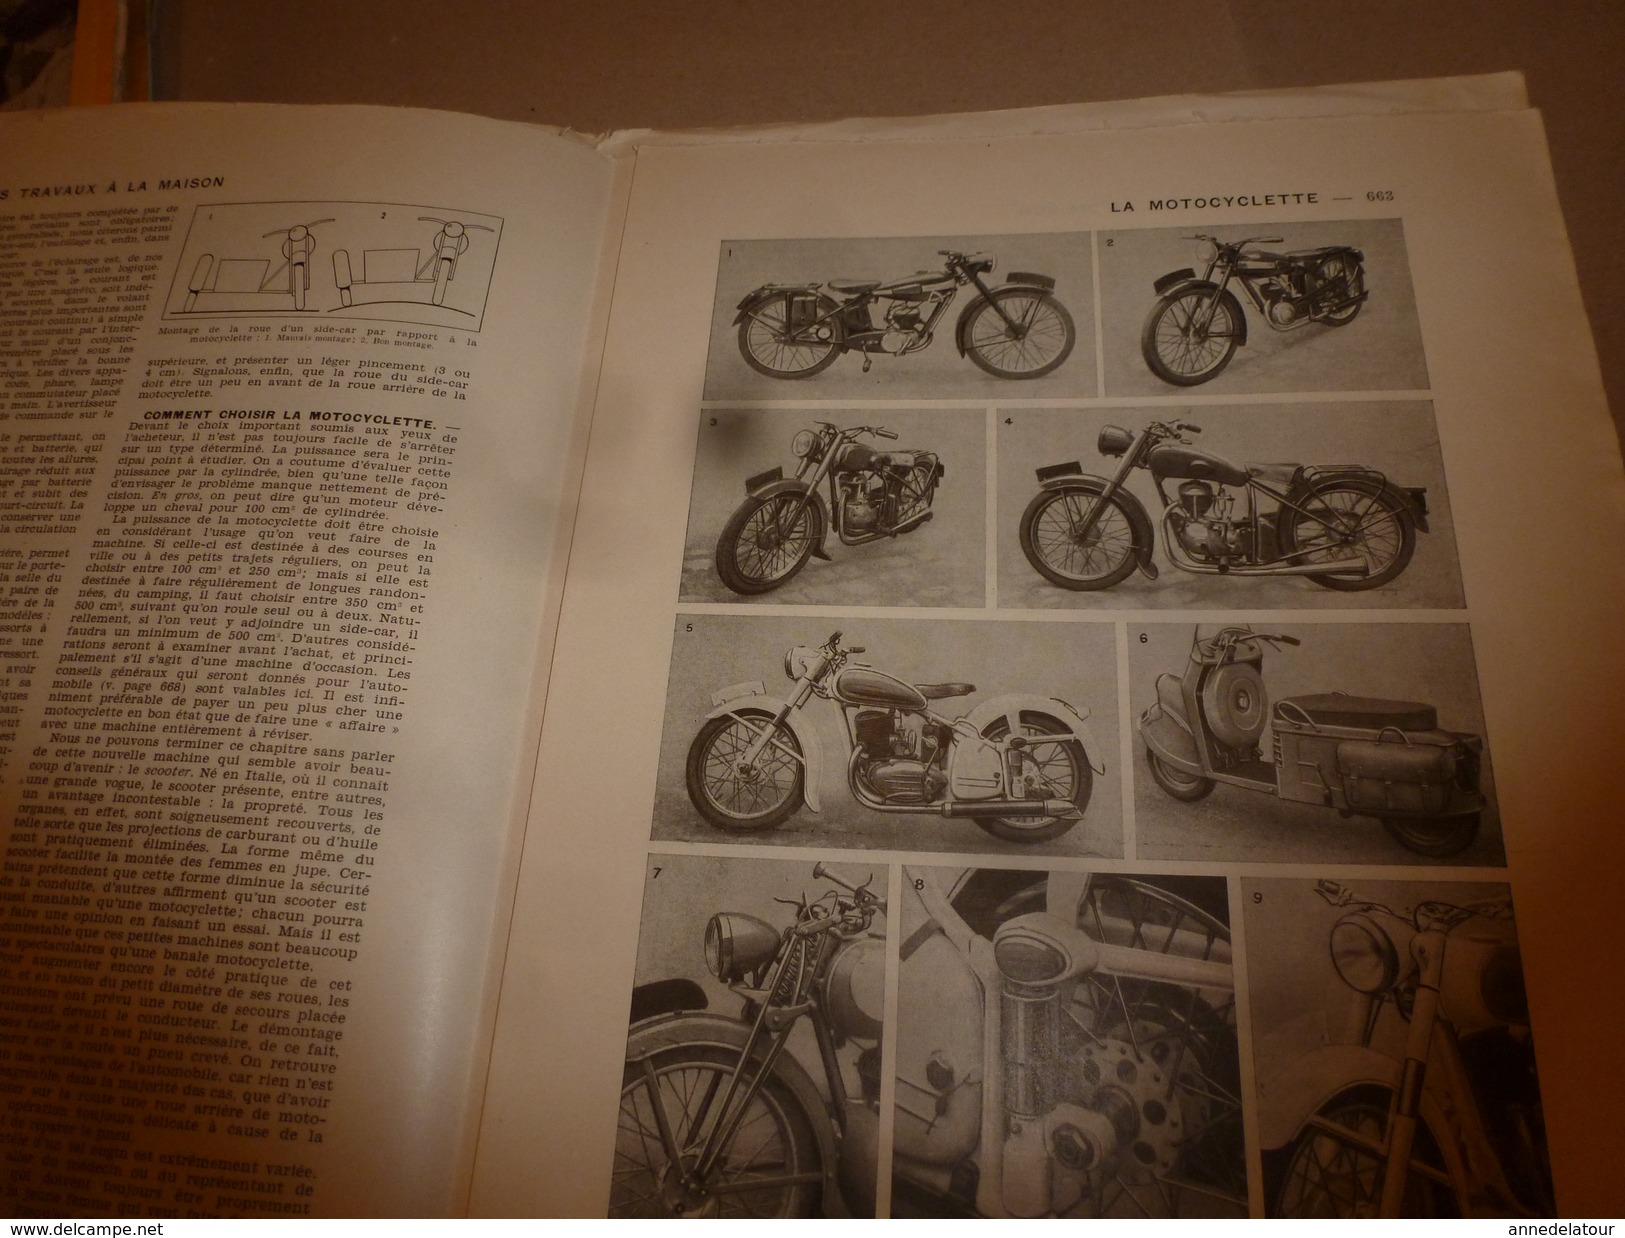 1950 ENCYCLOPEDIE FAMILIALE LAROUSSE ->Cordonnerie,Maroquinerie,Bicyclette,Motocyclette,Automobile,Travaux à la maison